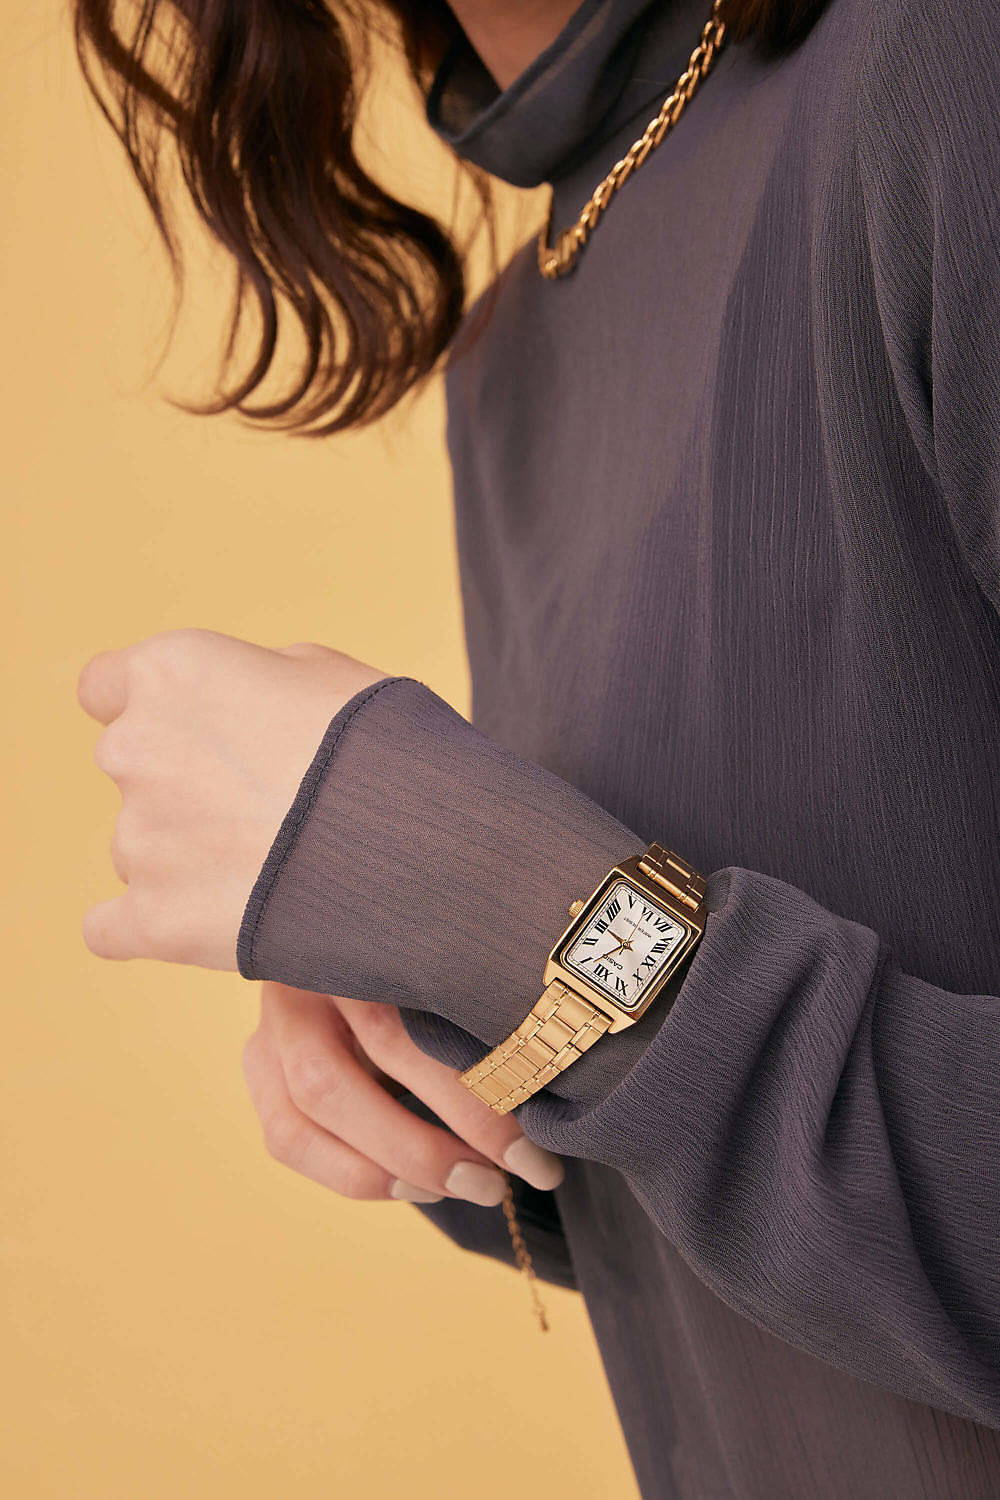 Eco安珂,韓國飾品,韓國手錶,韓國CASIO手錶,個性手錶,CASIO手錶,金屬錶帶手錶,卡西歐手錶